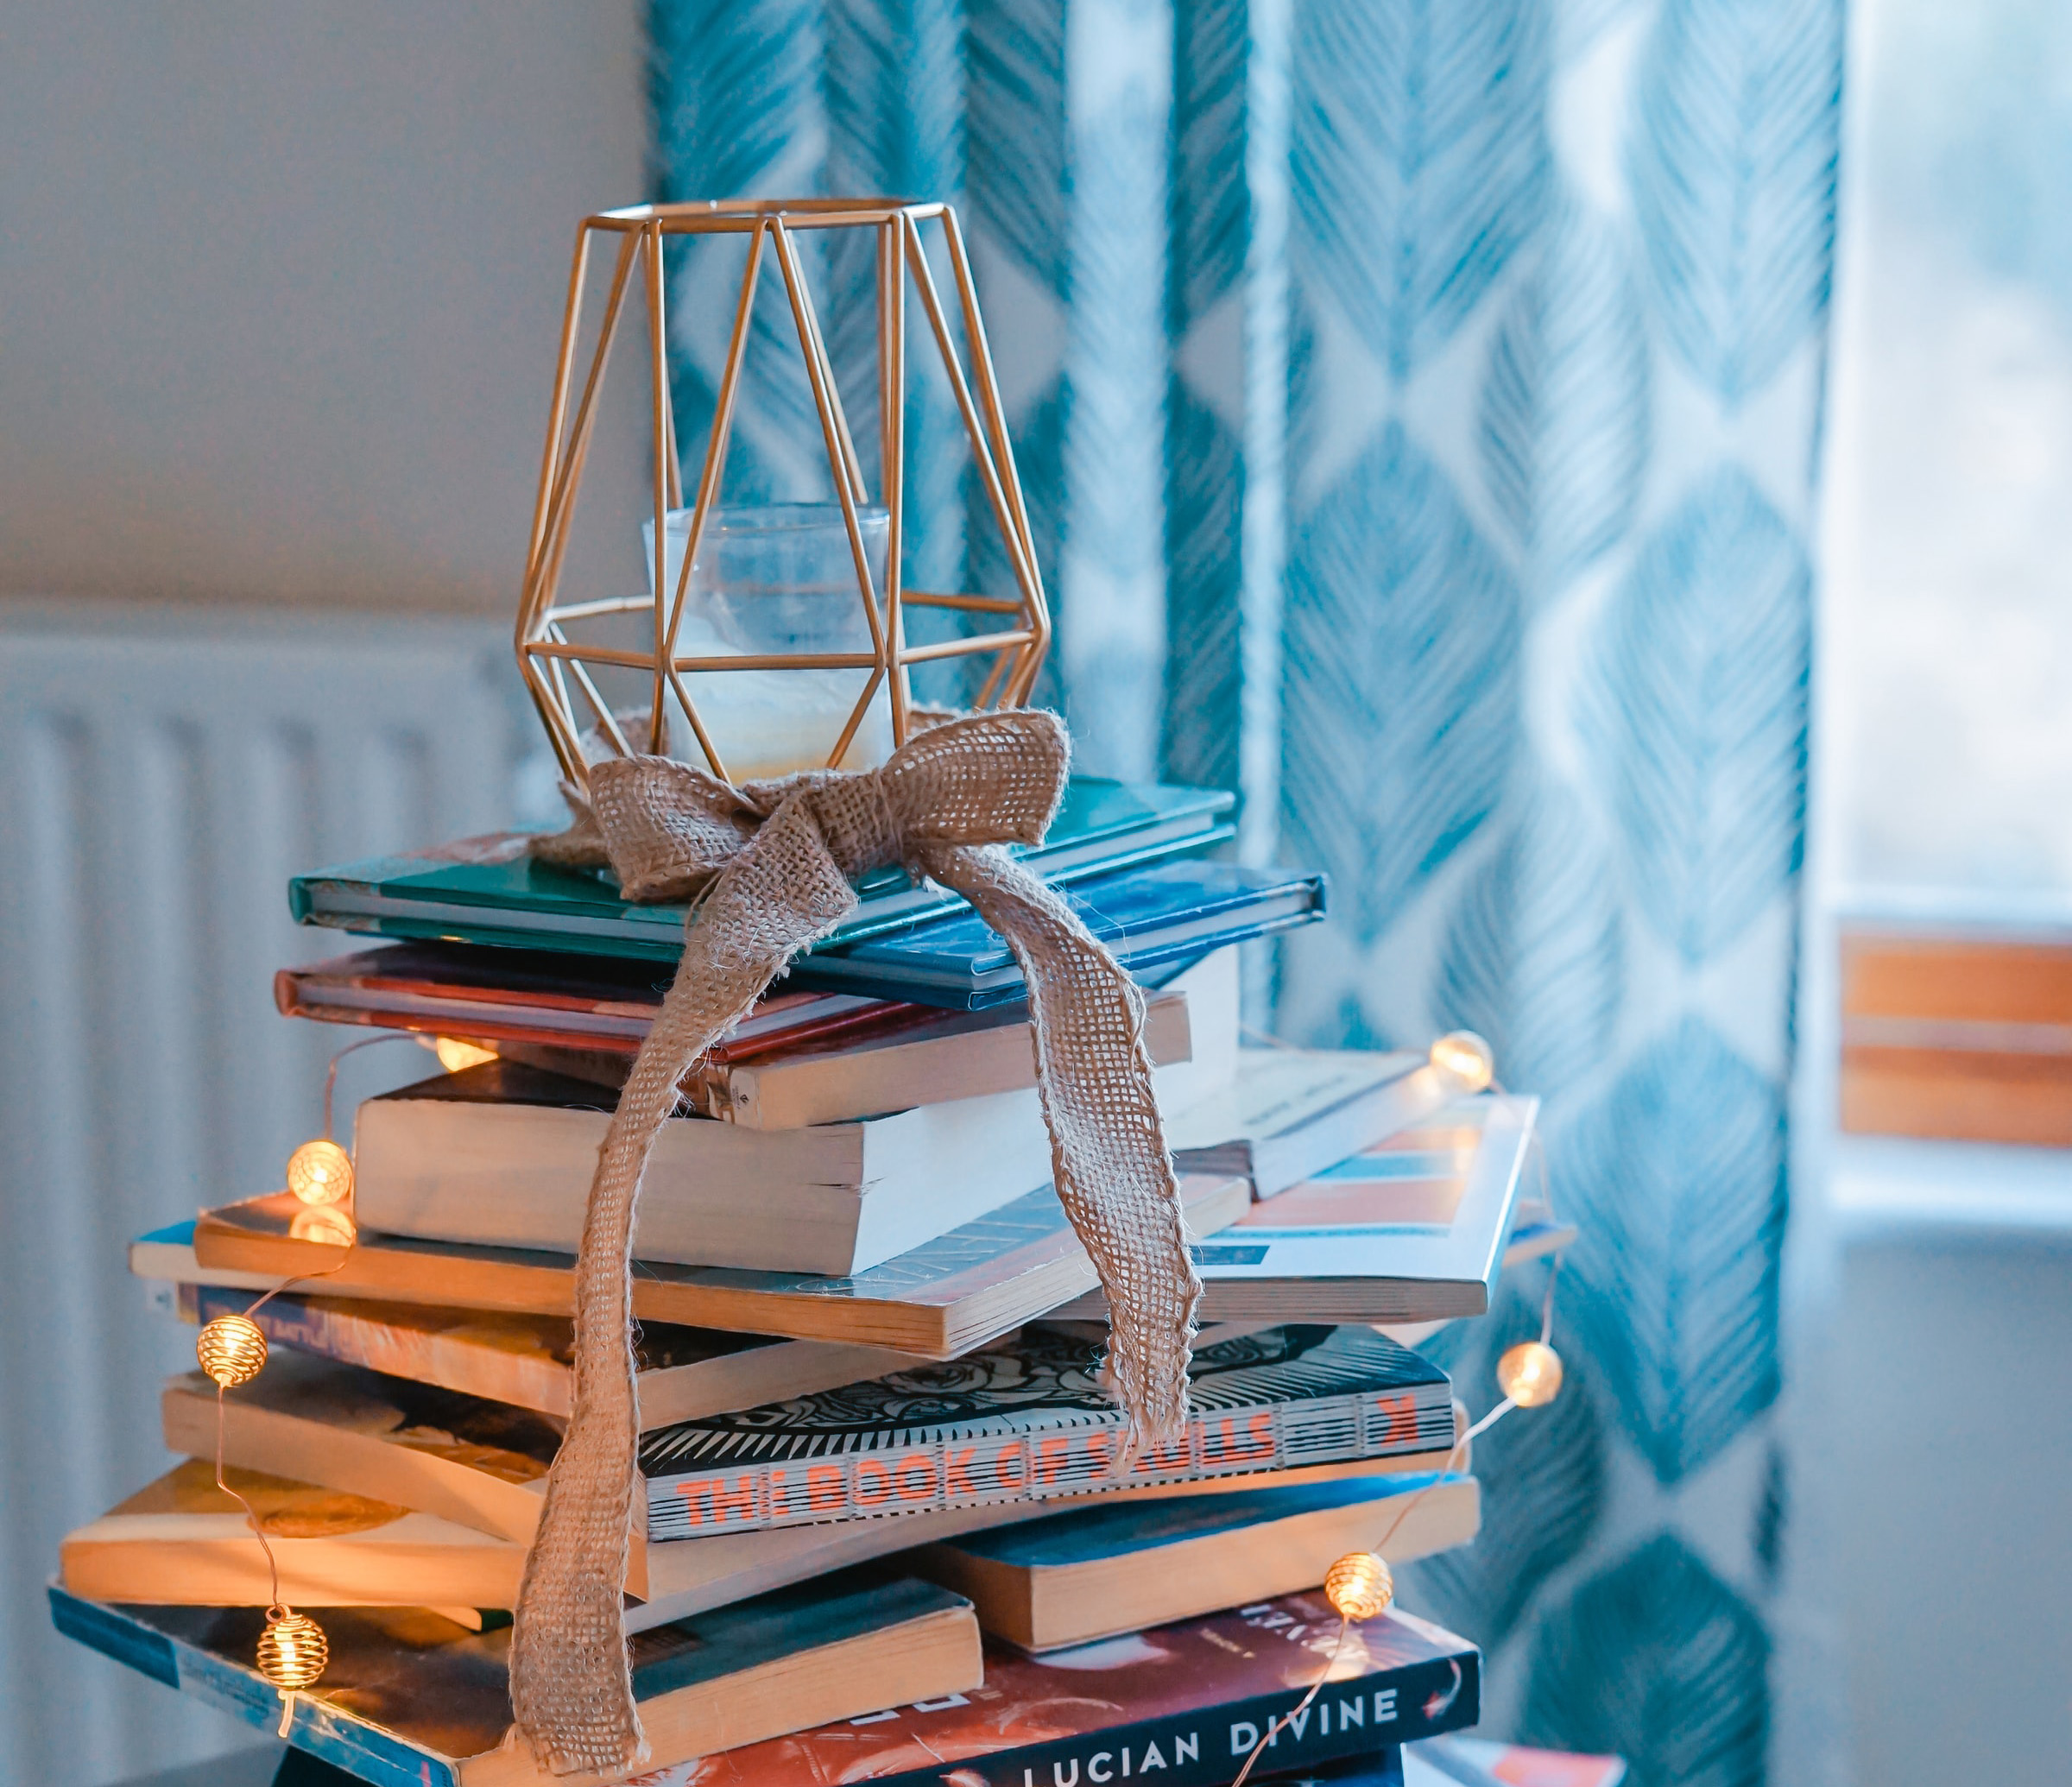 Bazar de Natal: Na imagem, vários livros estão empilhados com luzinhas de Natal ao redor, formando uma espécie de árvore improvisada.